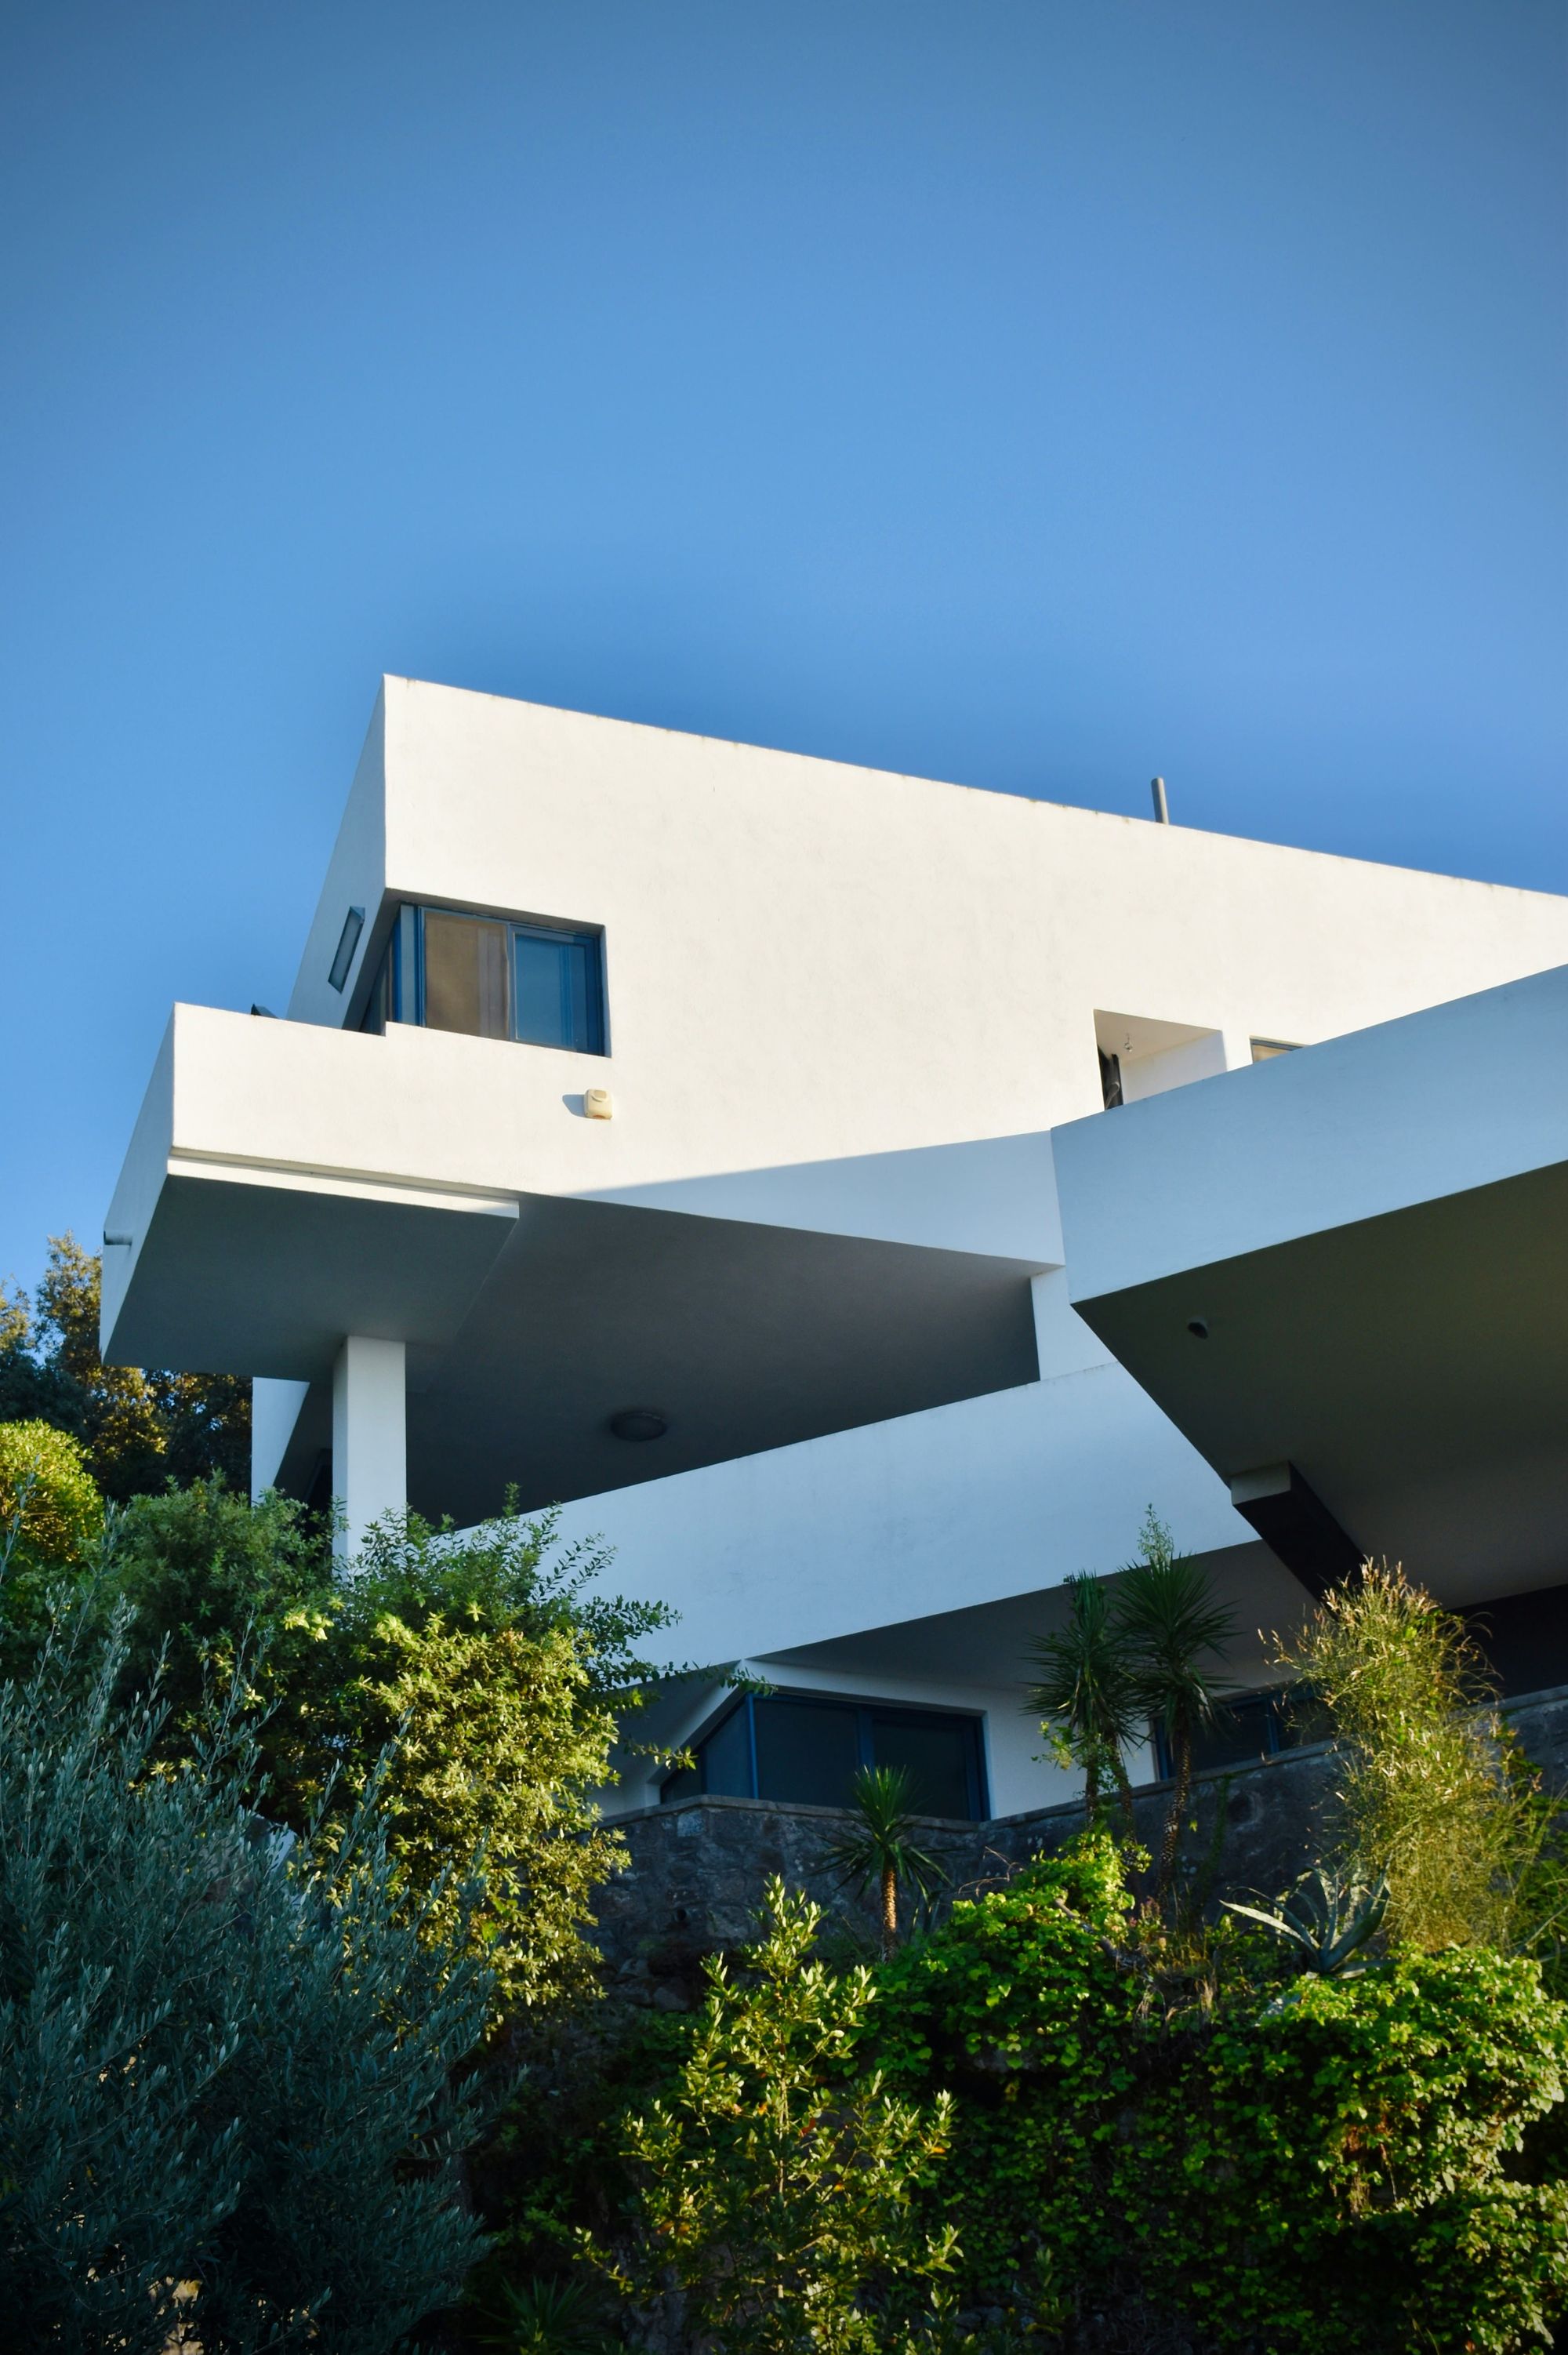 casa moderna brutalista en el campo con paredes blancas y terrazas